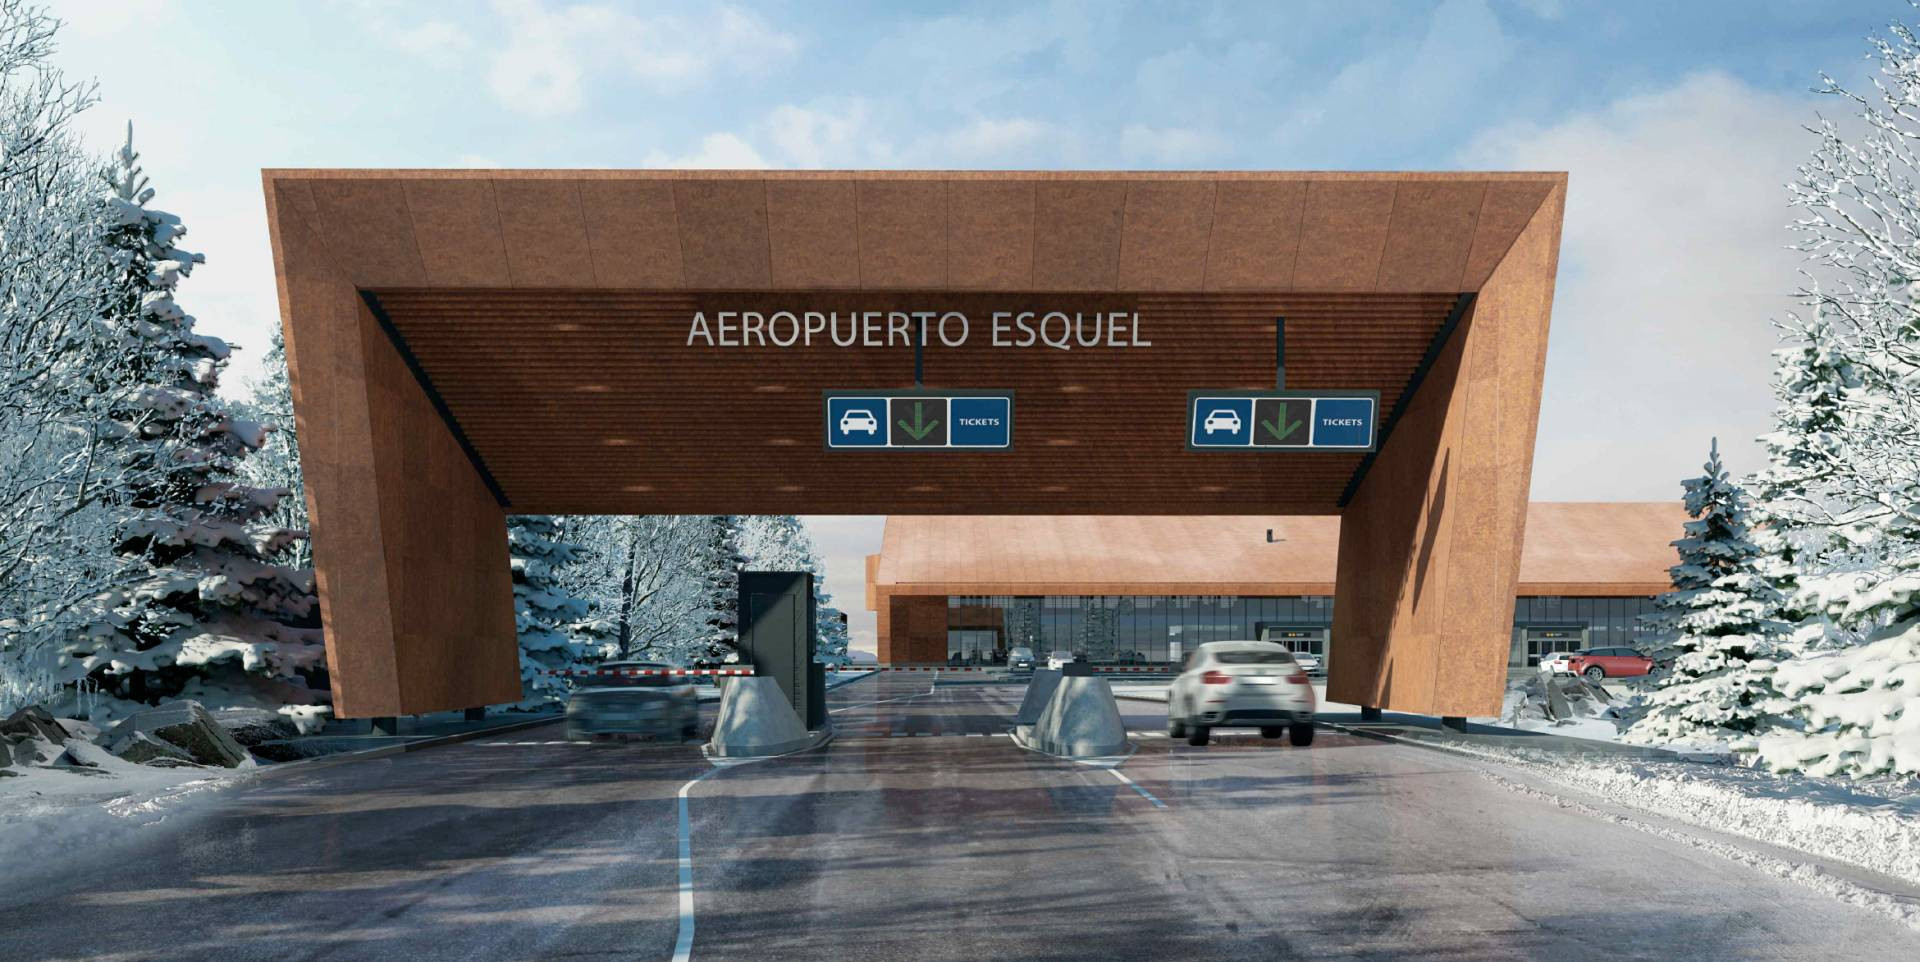 El Ministerio de Transporte renovará aeropuerto de Esquel